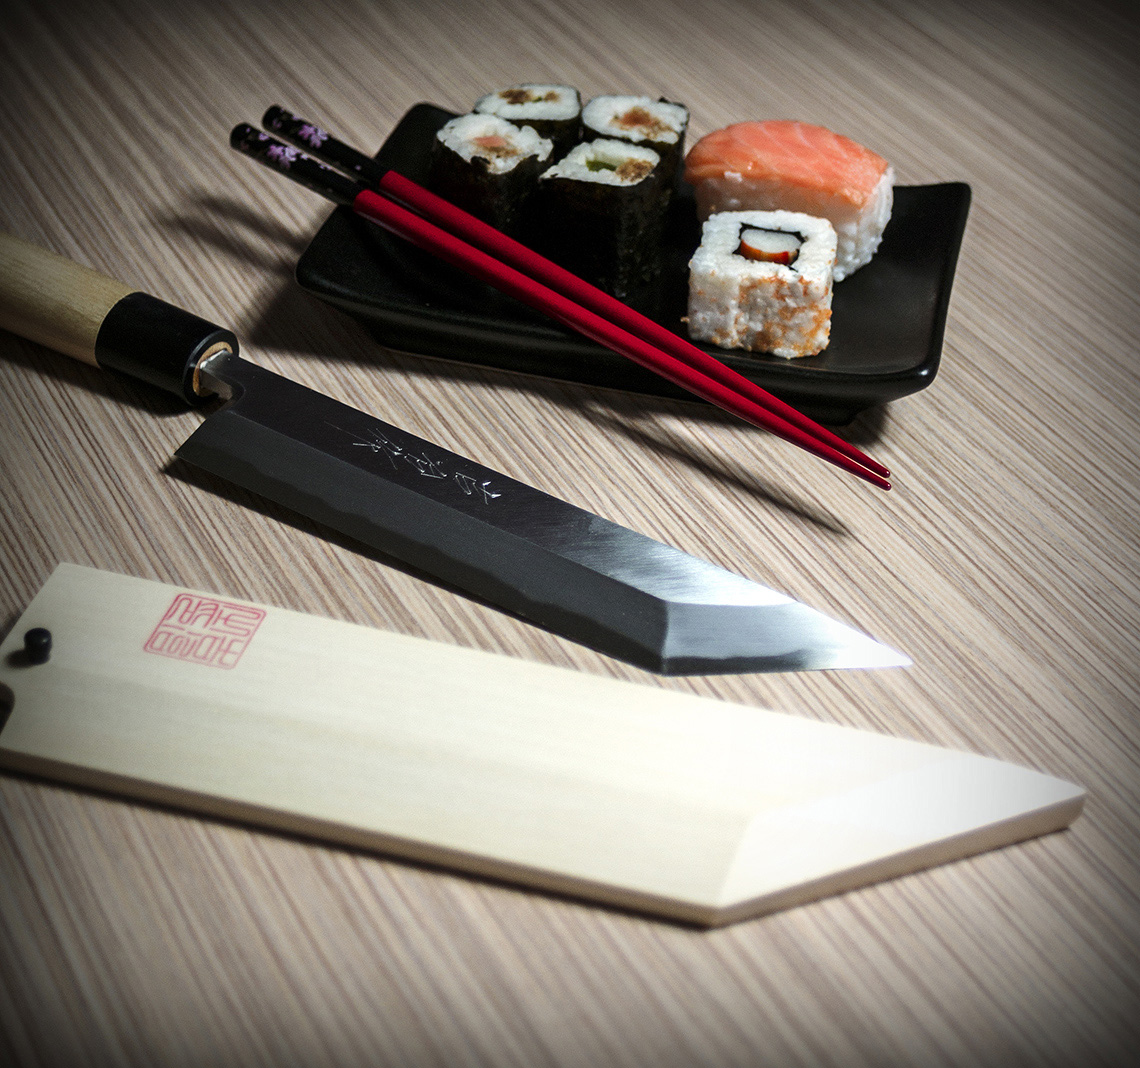 Tradycyjne noże japońskie kute są przez mistrzów tradycyjnego rzemiosła